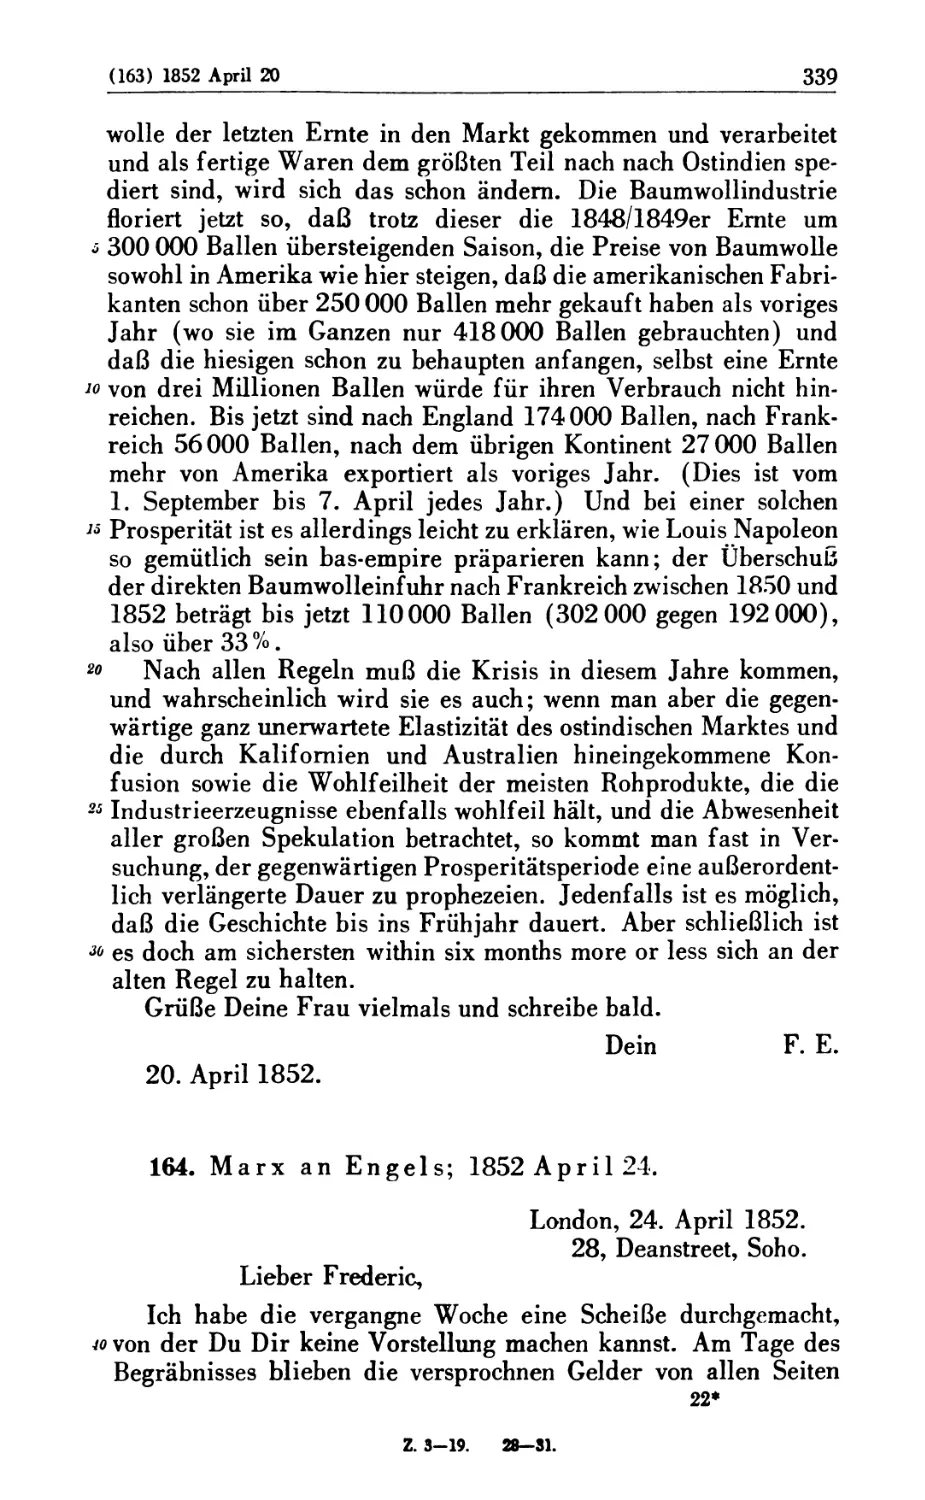 164. Marx an Engels; 1852 April 24